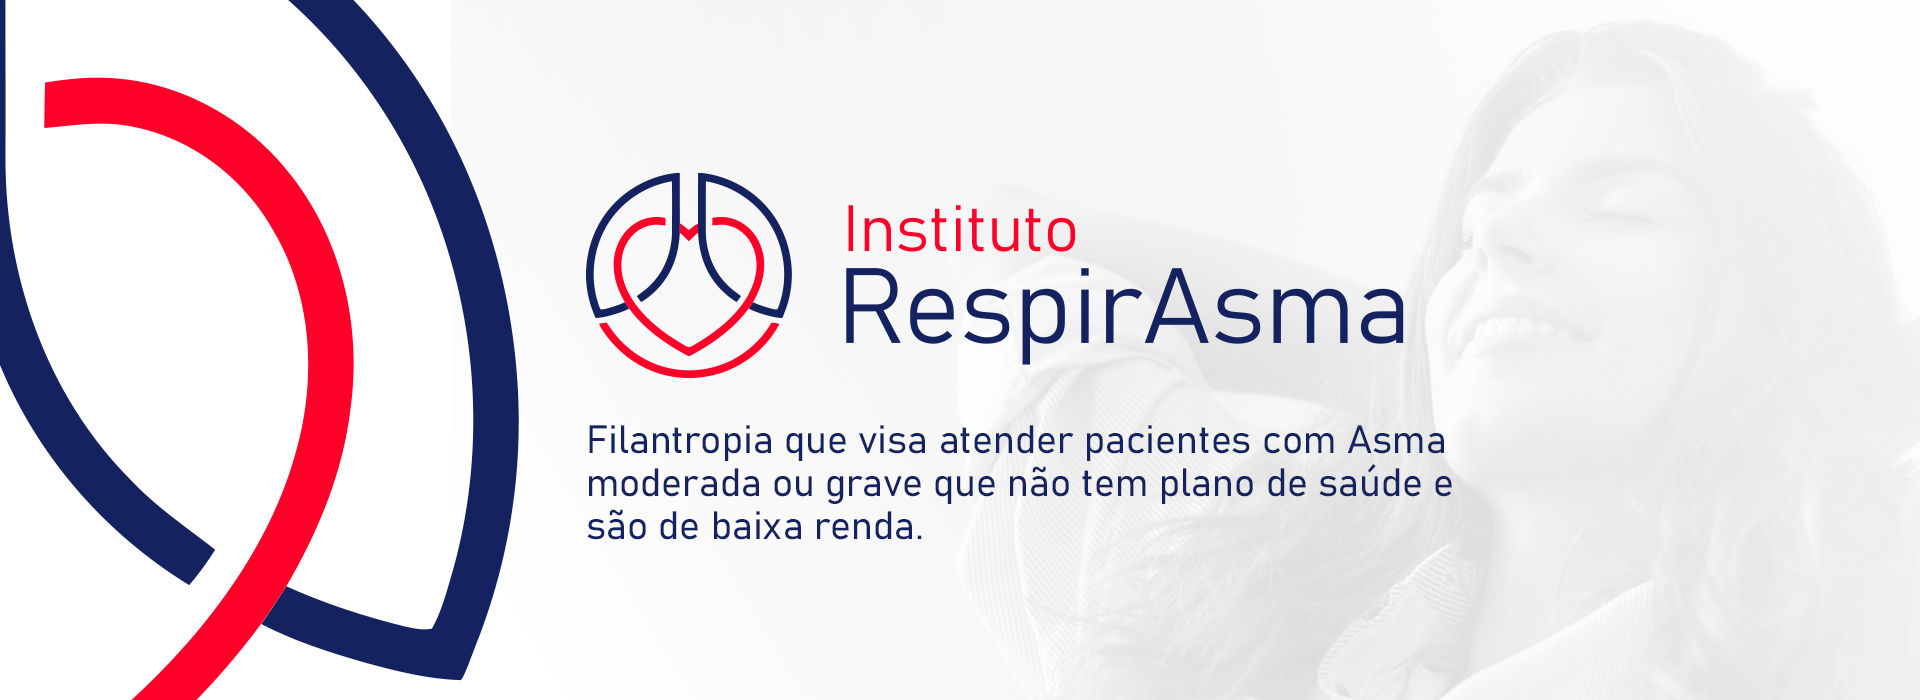 Instituto RespirAsma